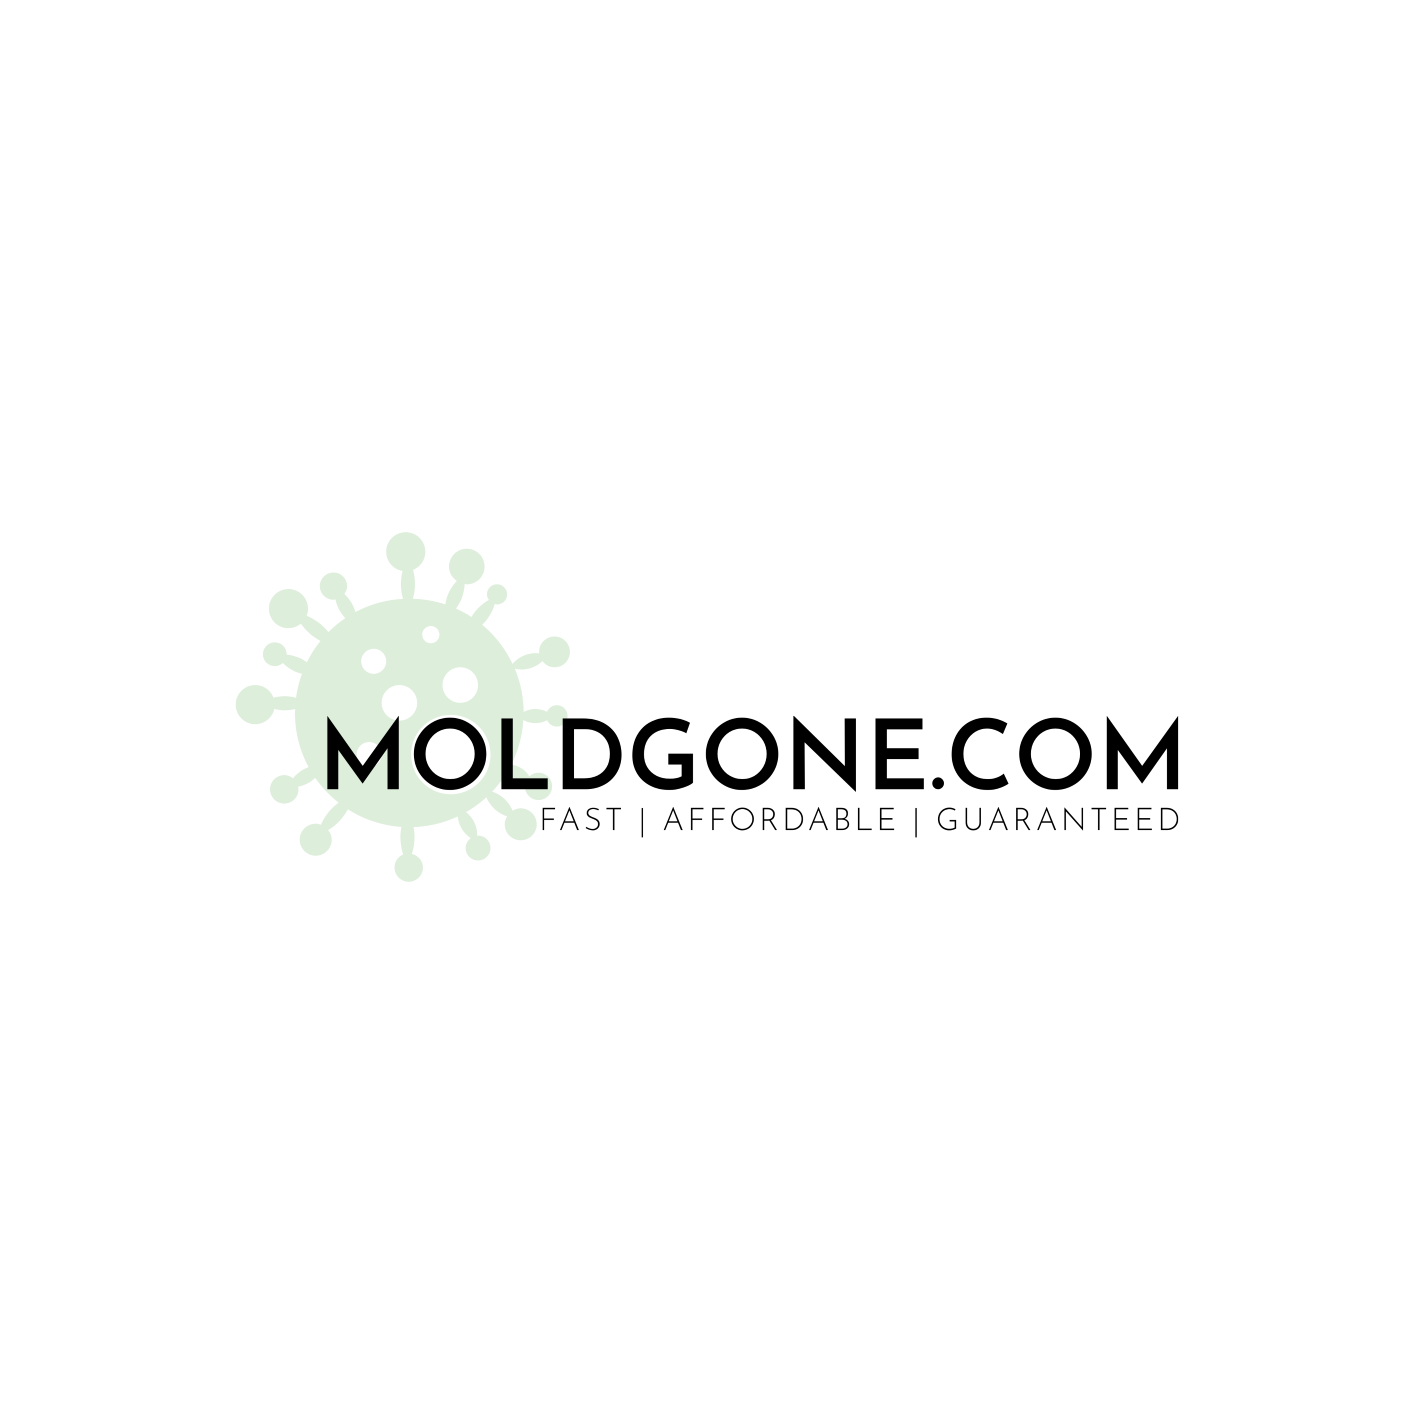 MoldGone.com Logo